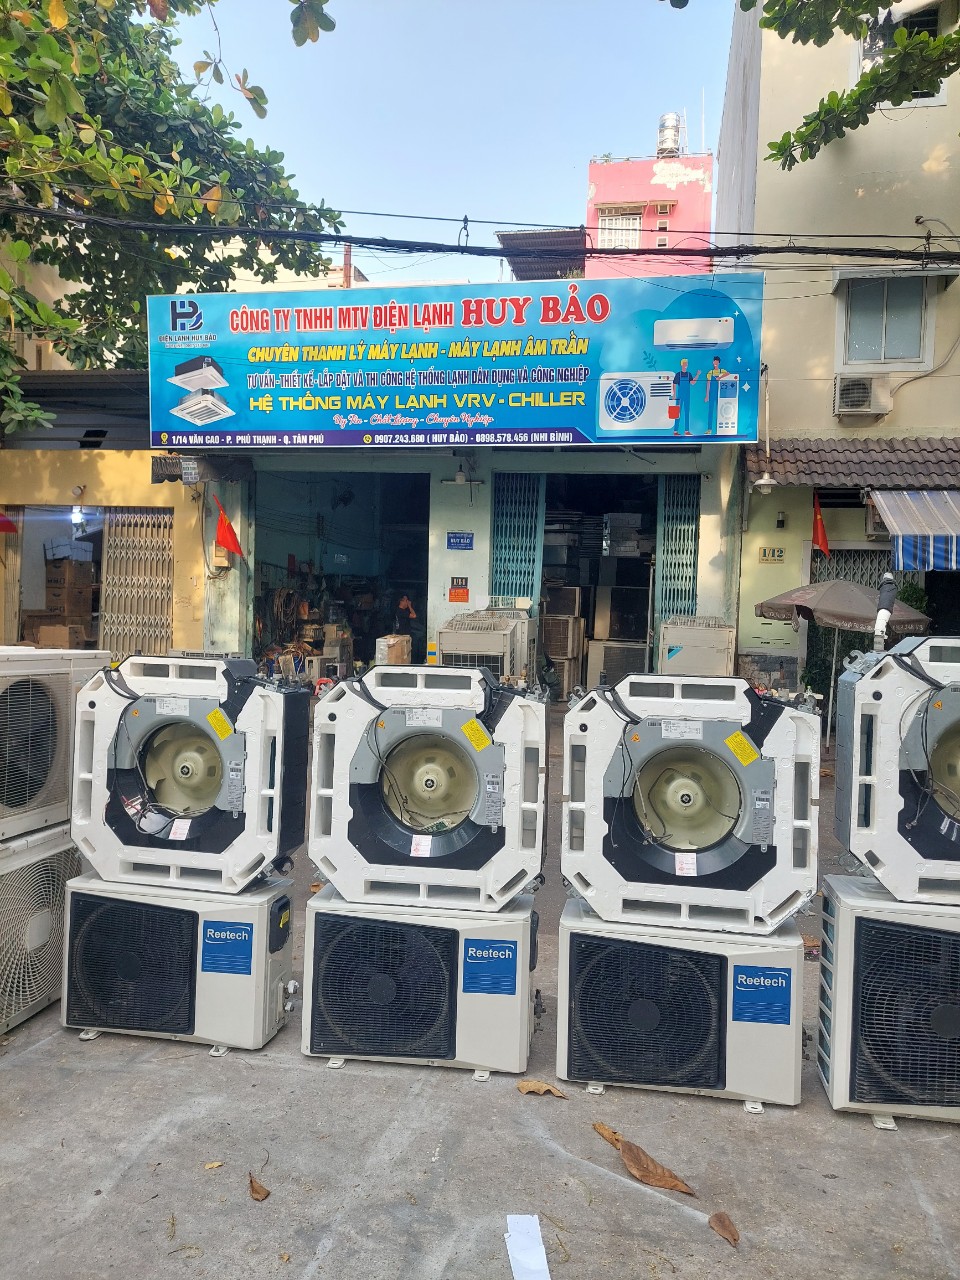 3 Dòng máy lạnh cũ nội địa bán chạy ở Việt Nam |#1 Bán Máy Lạnh Cũ Âm Trần Uy Tín - chất lượng